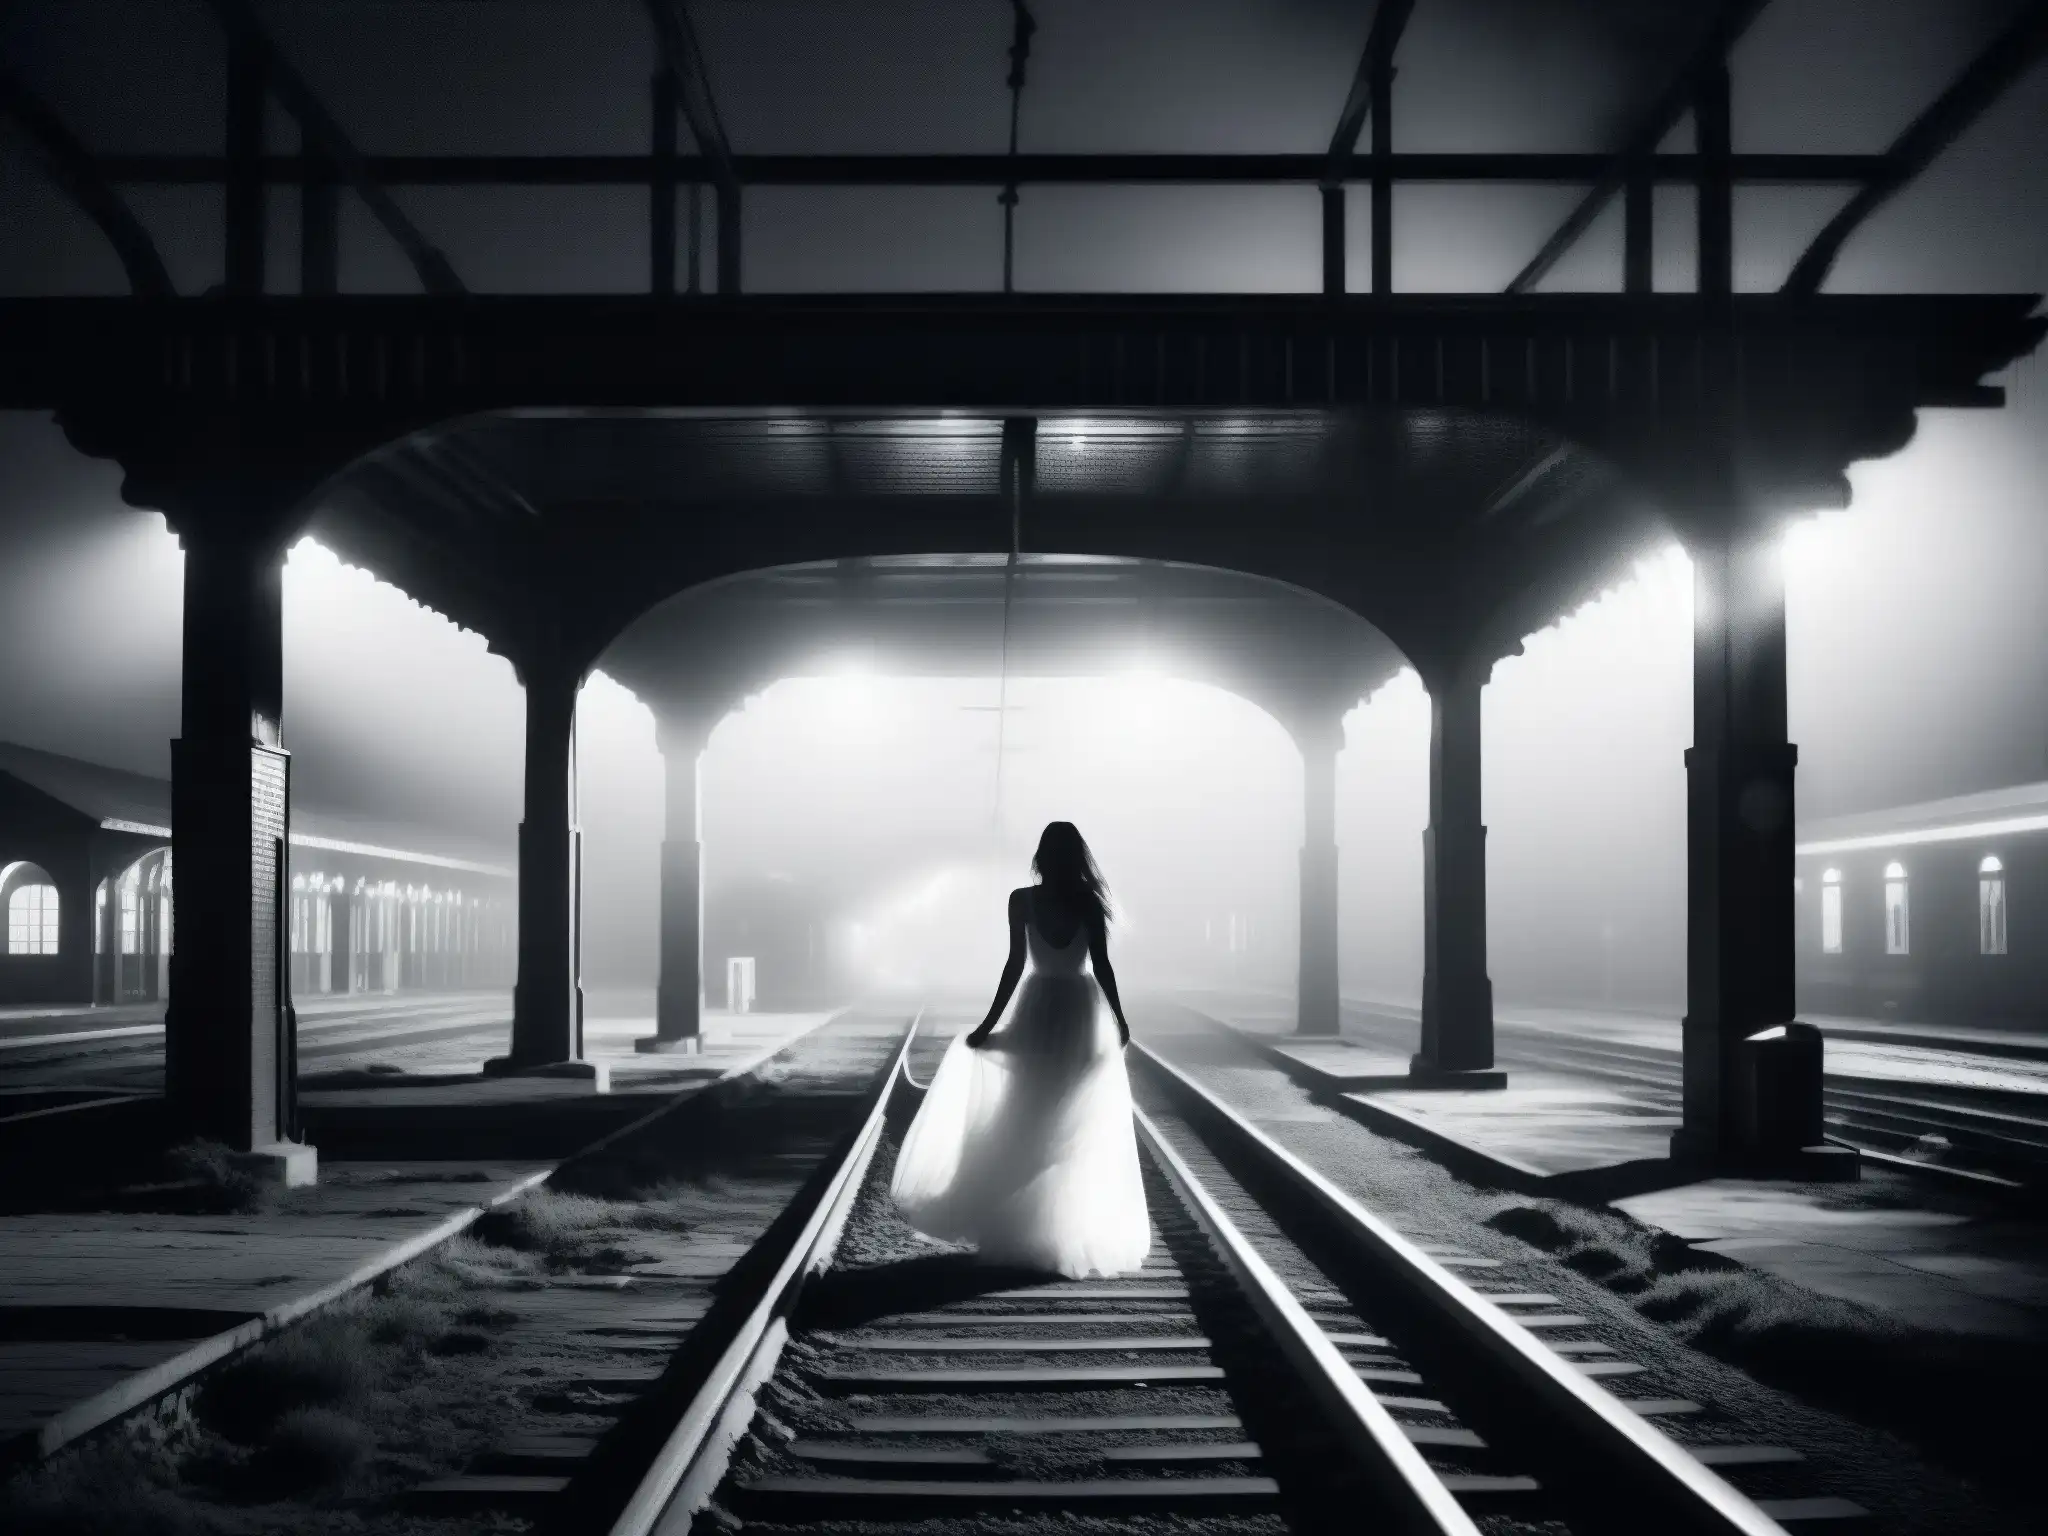 Imagen nocturna de una estación de tren abandonada, con vías desgastadas y una figura fantasmal entre la niebla